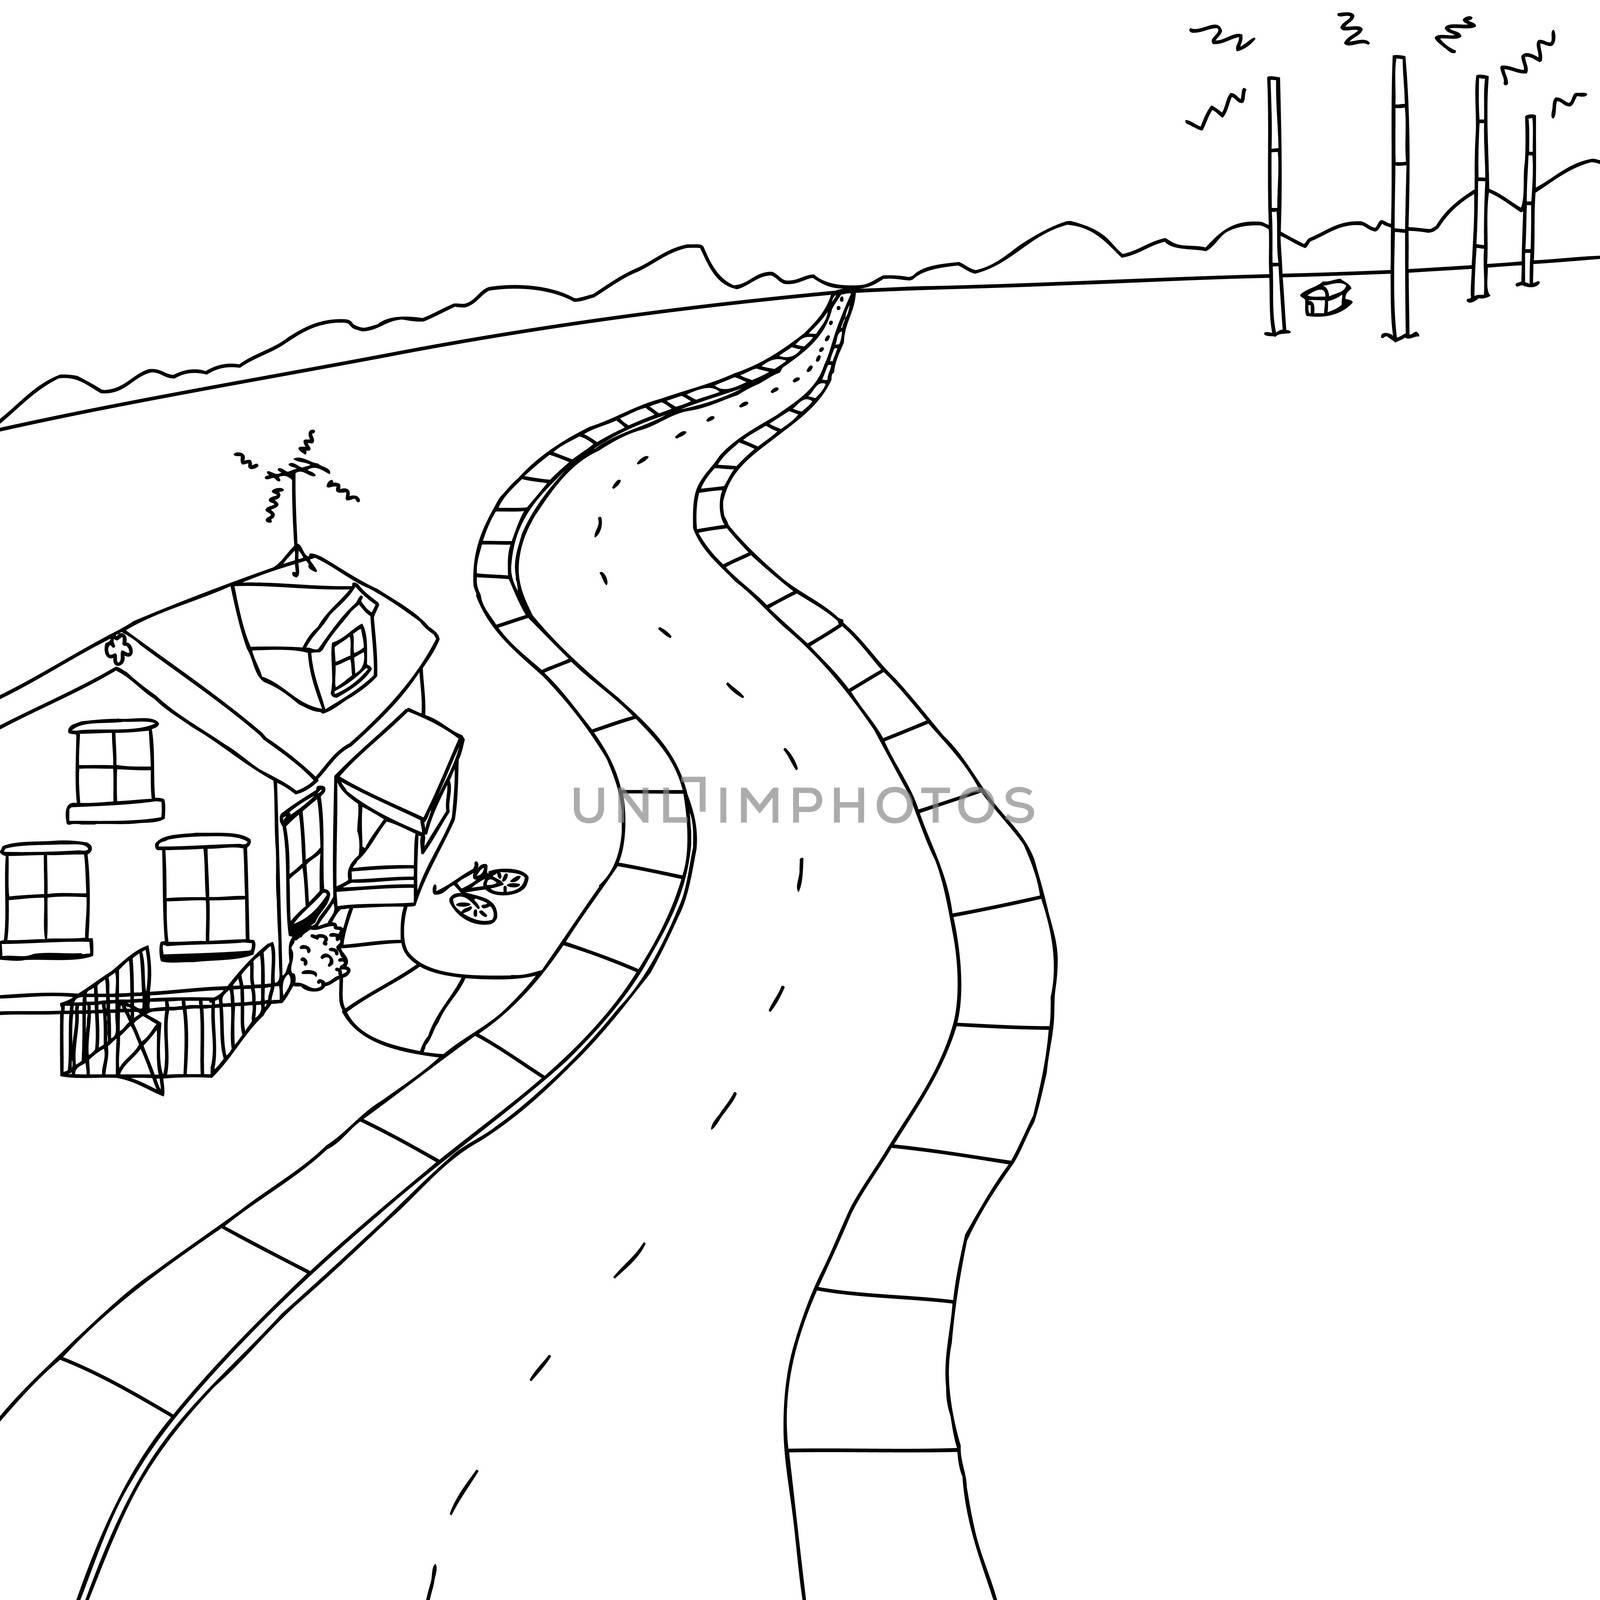 Outlined scene of little house on road near radio transmitter